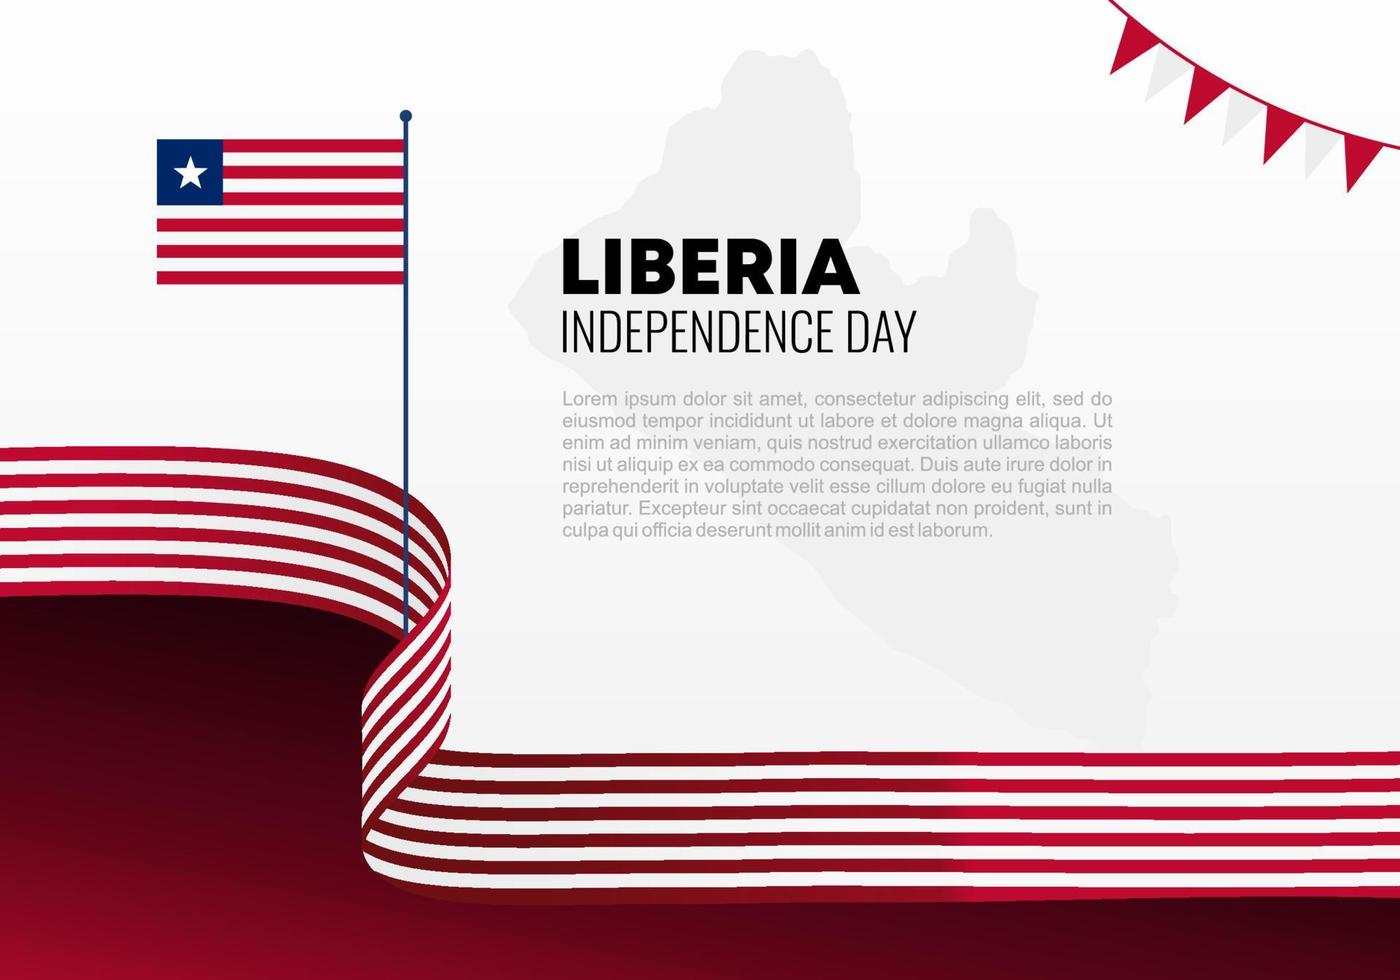 dia da independência da Libéria para celebração nacional em 26 de julho. vetor